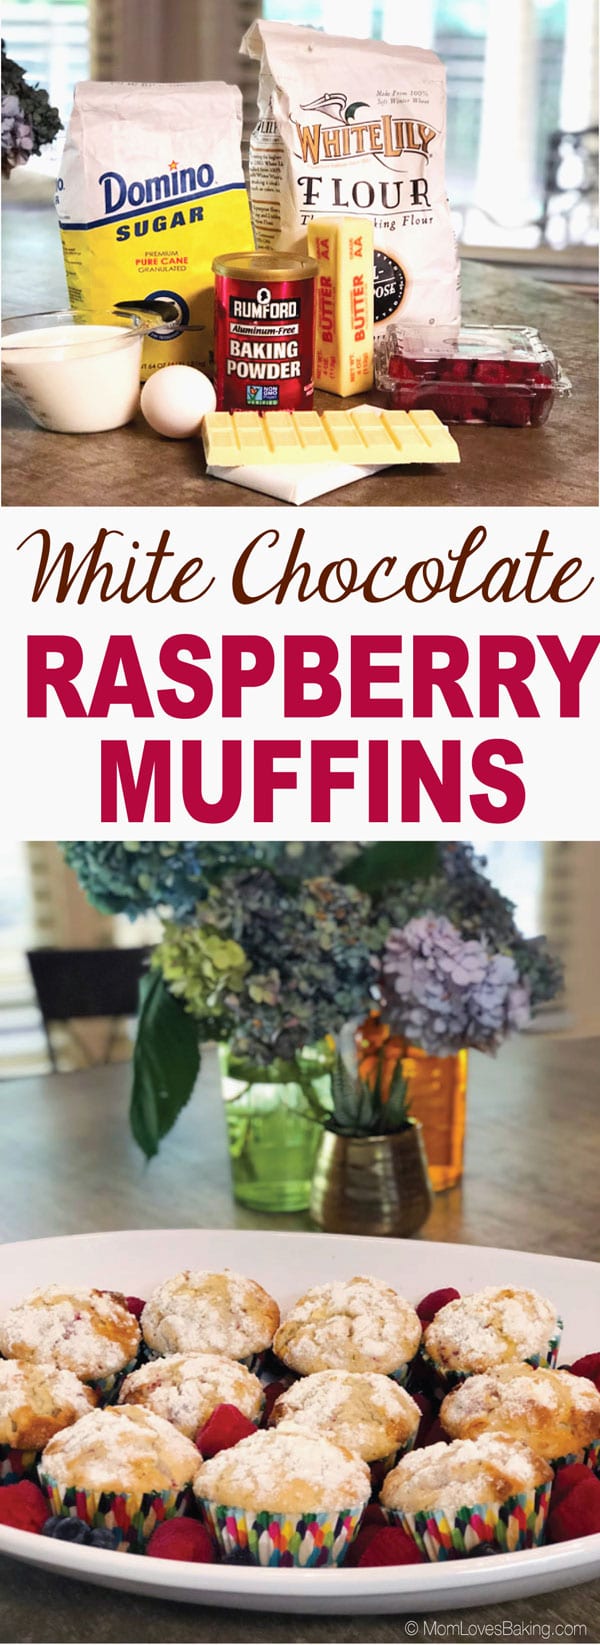 White chocolate raspberry muffins